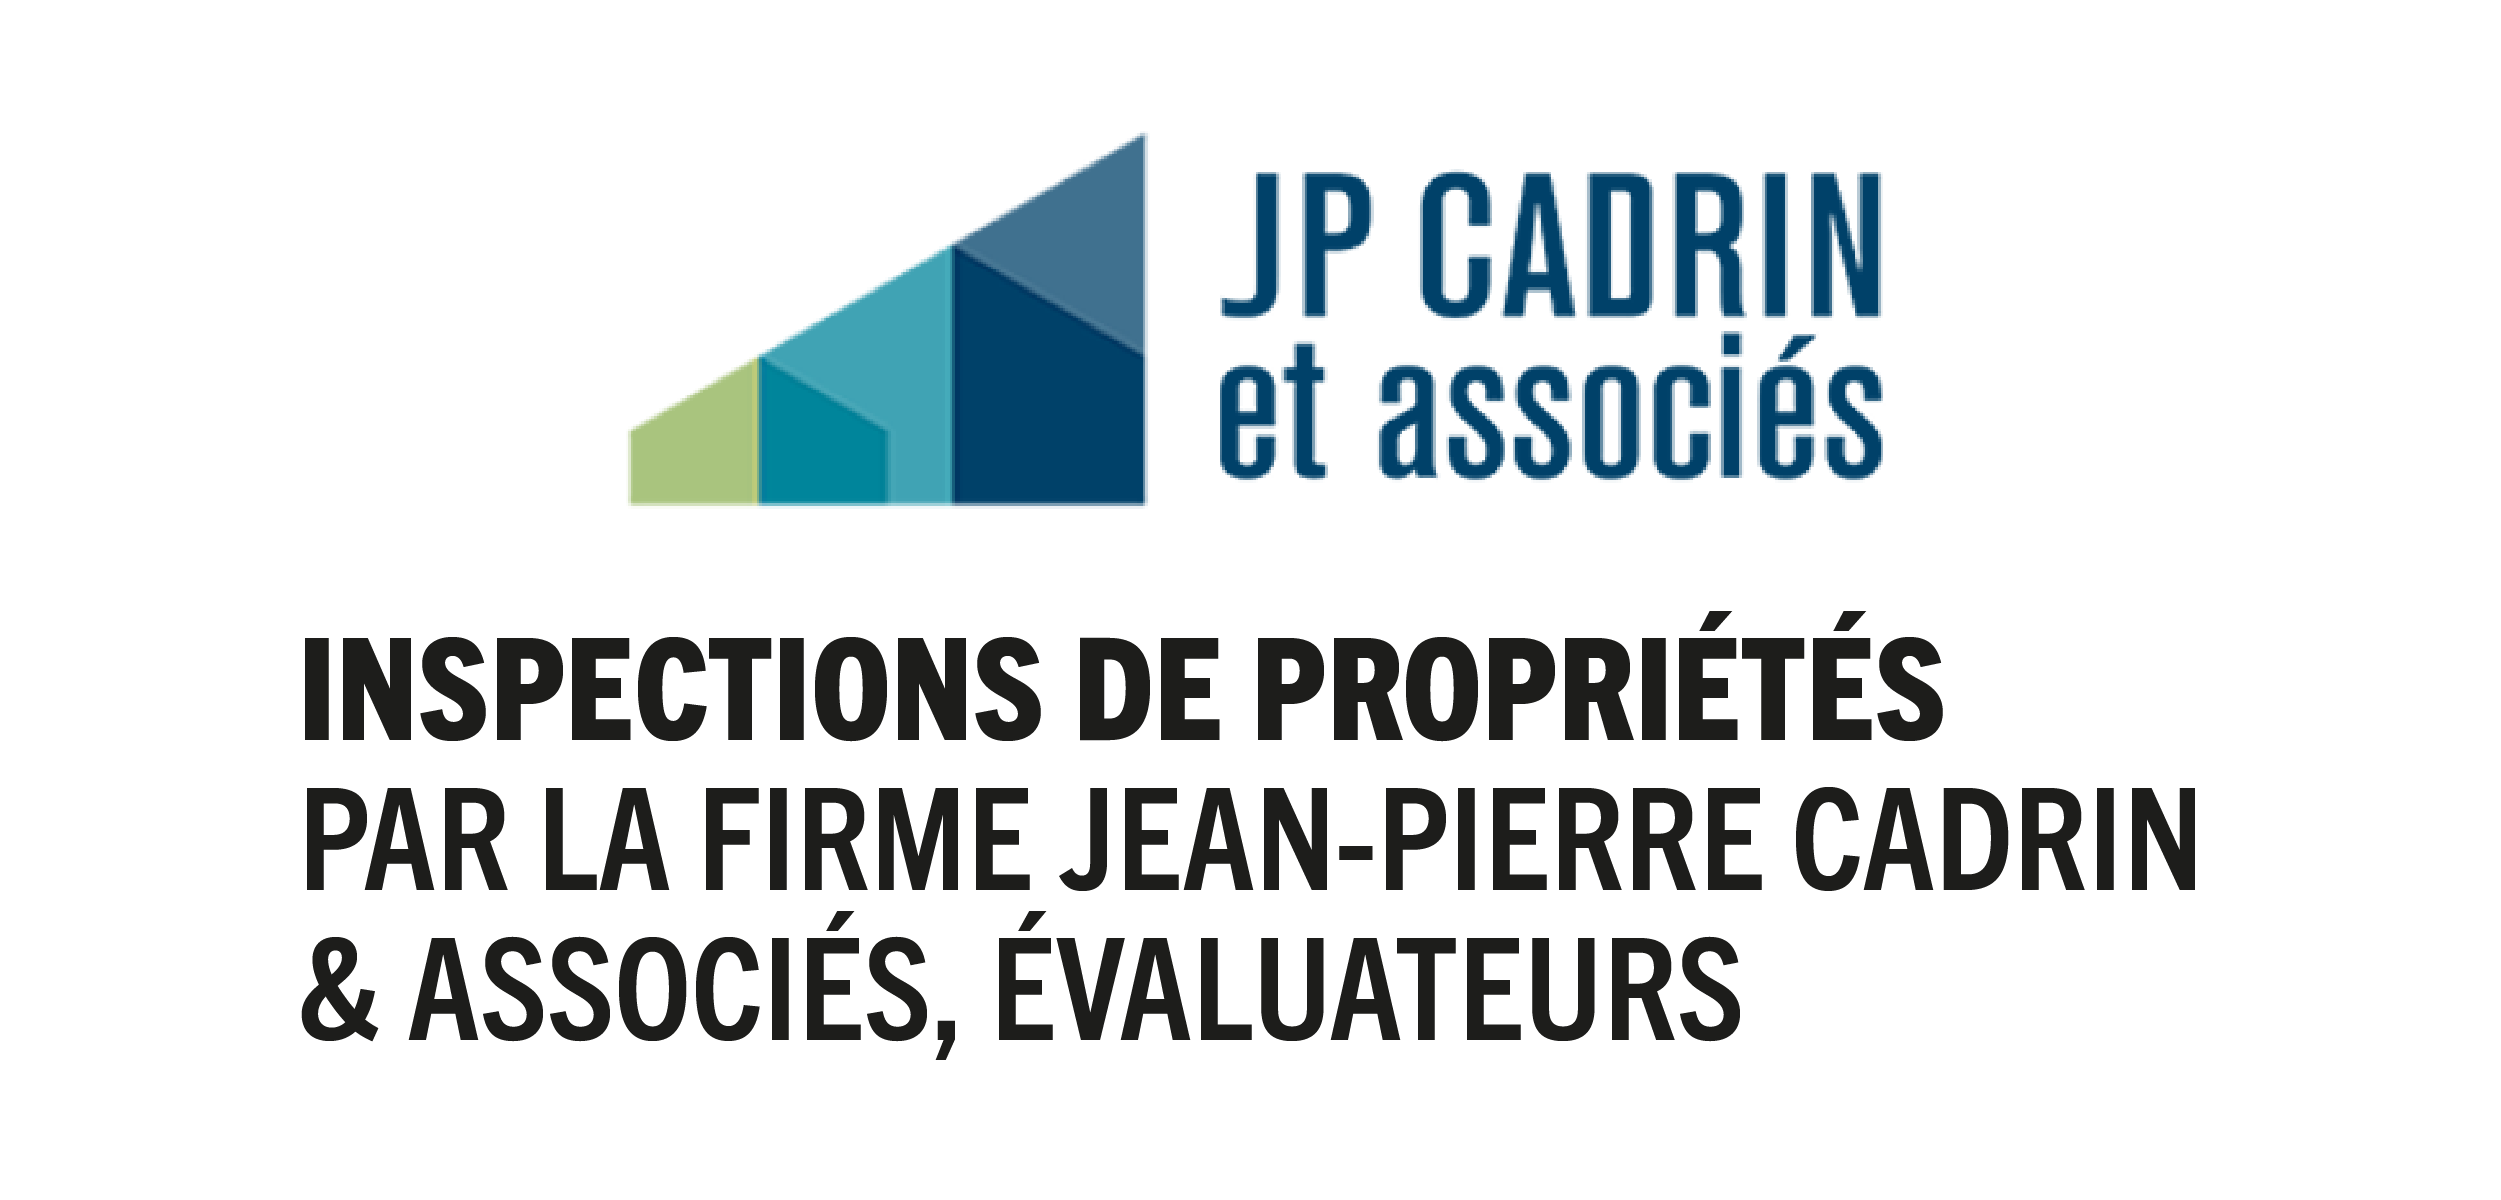 You are currently viewing Inspections de propriétés par la firme Jean-Pierre Cadrin & associés, évaluateurs